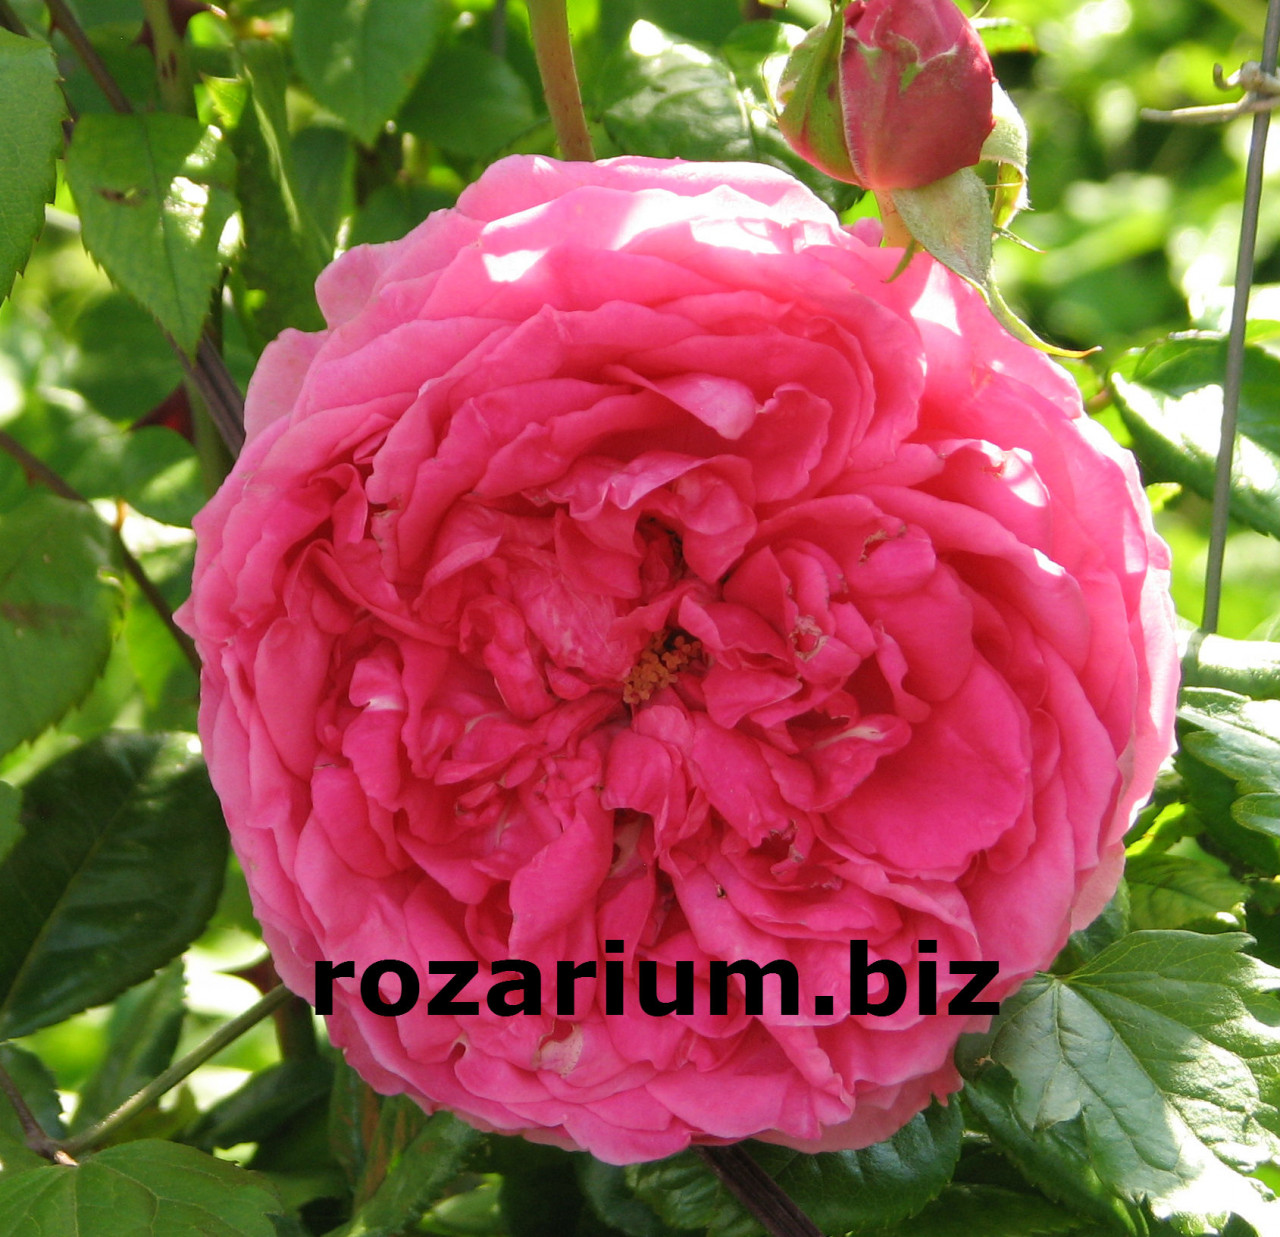 Питомник роз Полины козловой rozarium biz